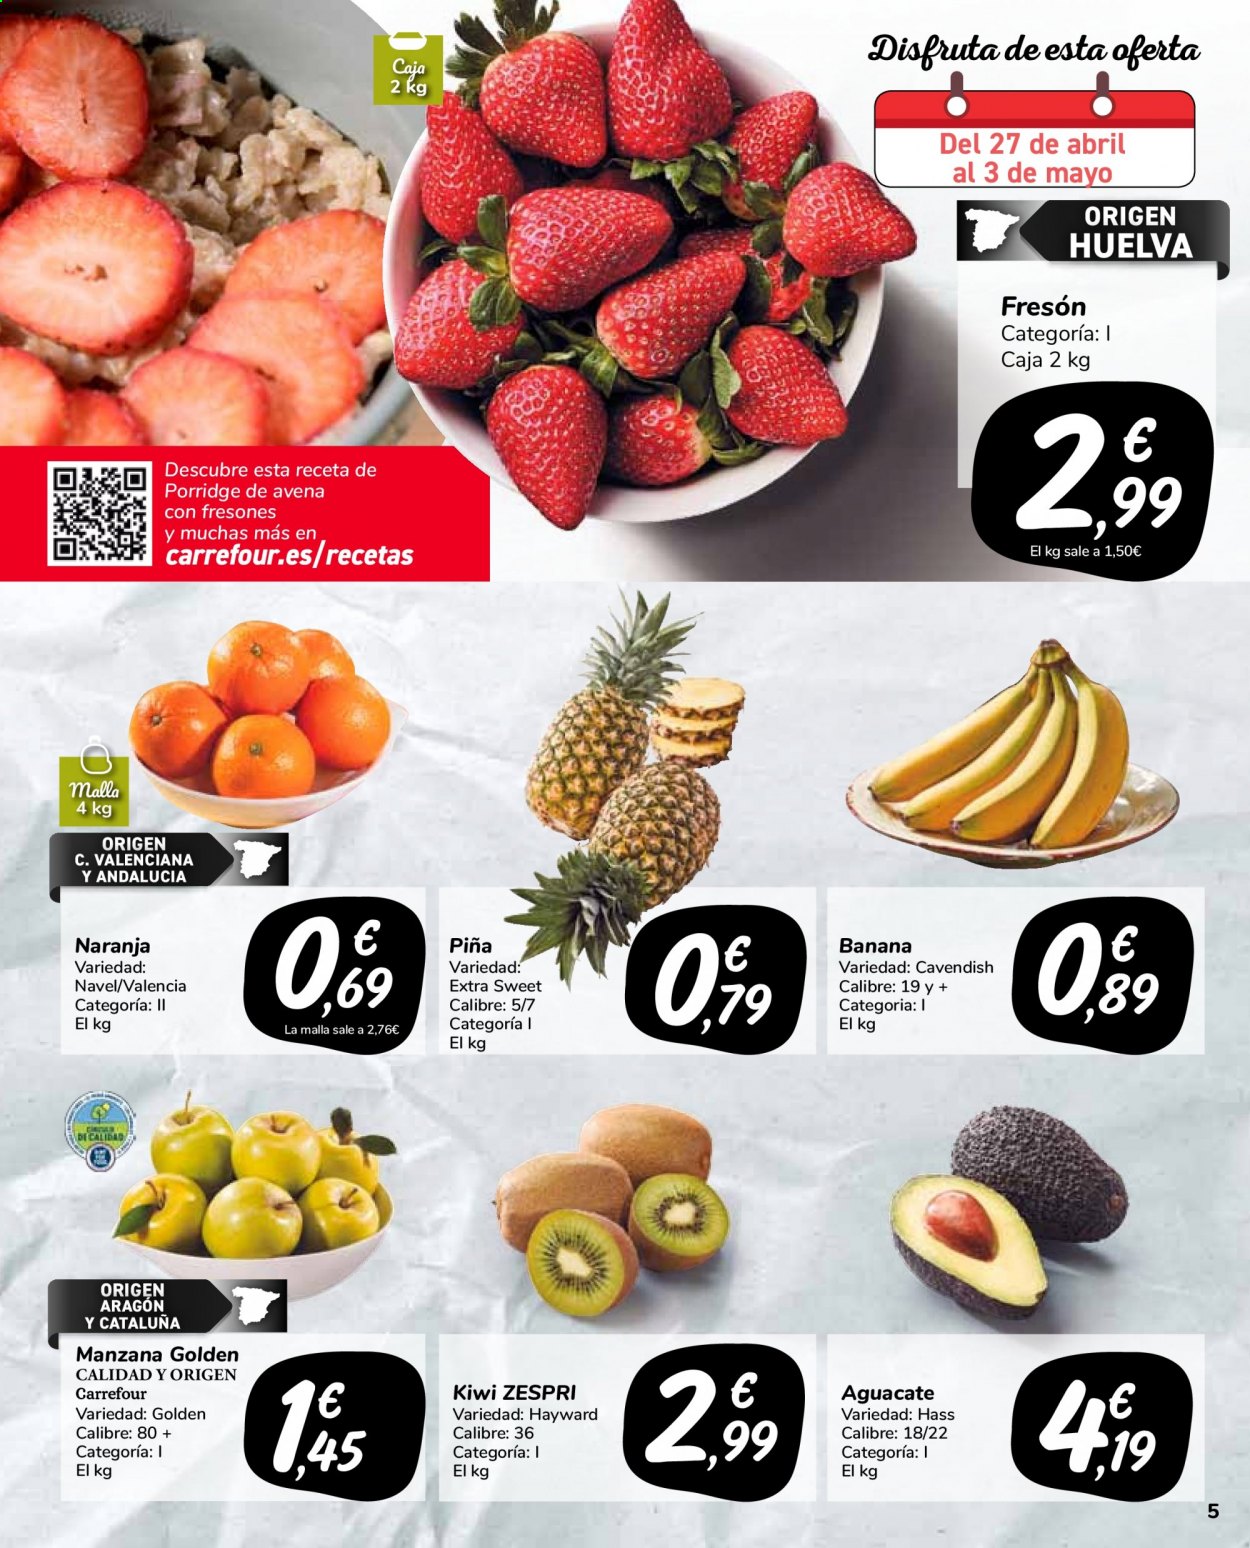 thumbnail - Folleto actual Carrefour - 27/04/21 - 10/05/21 - Ventas - piña, banana, kiwi, aguacate, manzanas, naranja. Página 5.